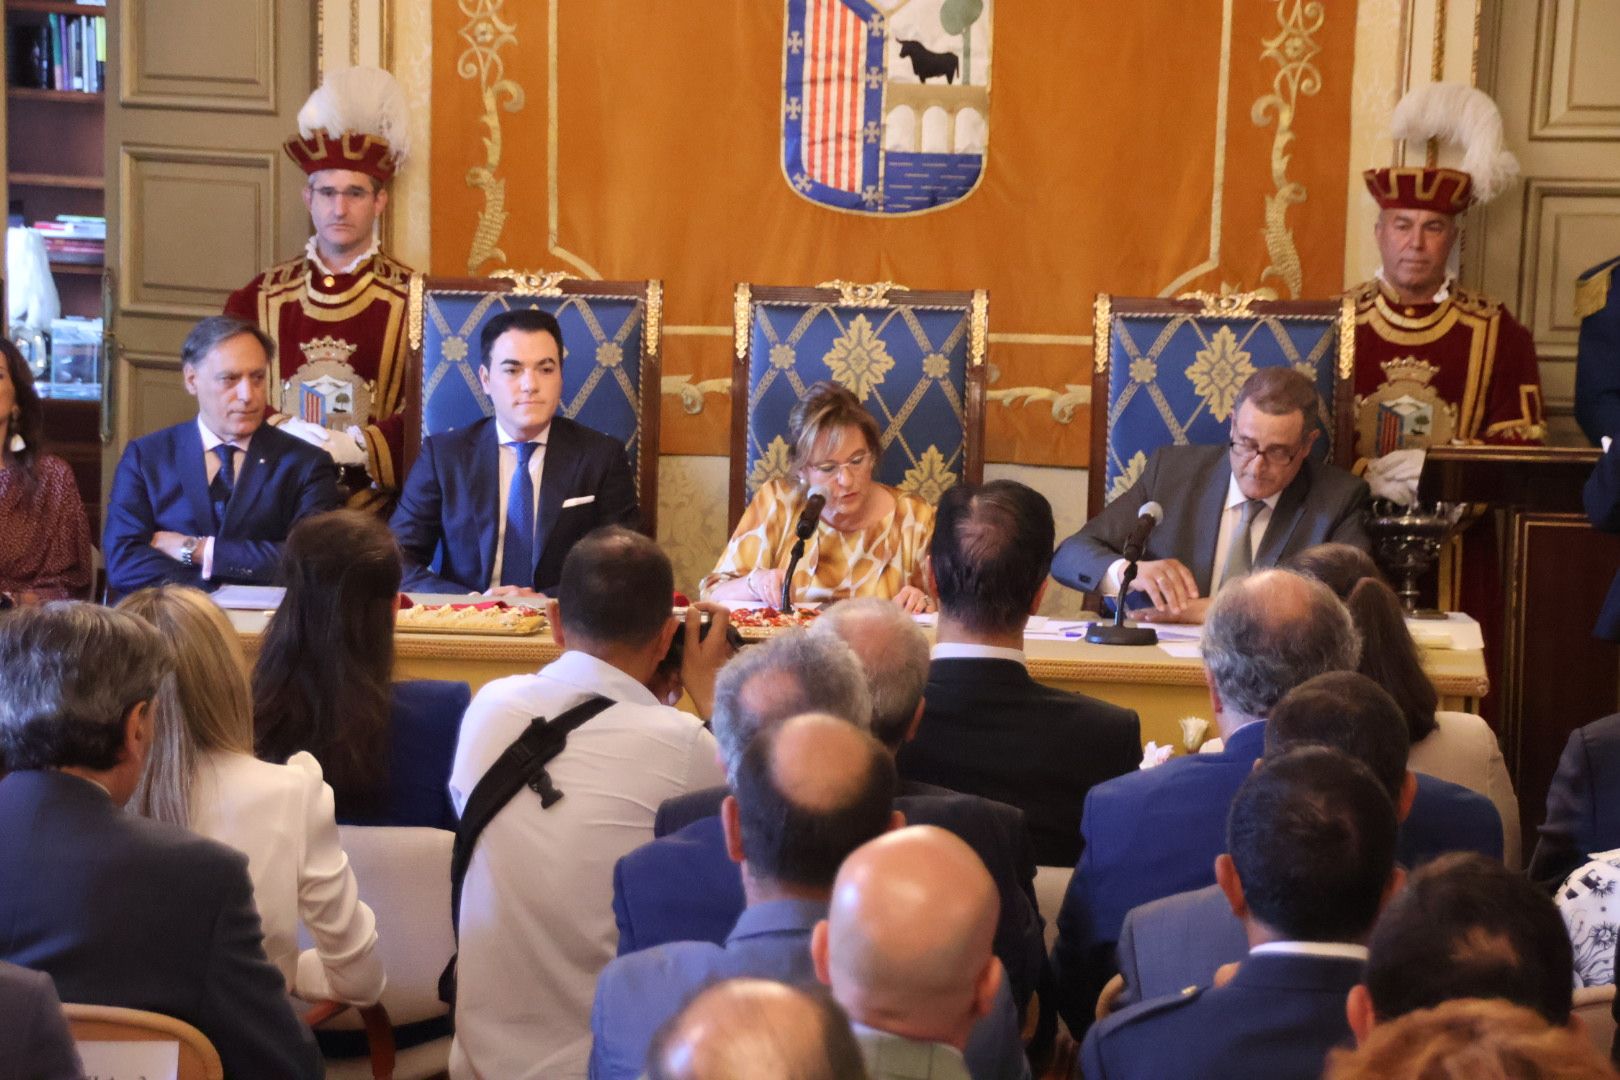 Pleno de constitución de la nueva corporación municipal del Ayuntamiento de Salamanca3623